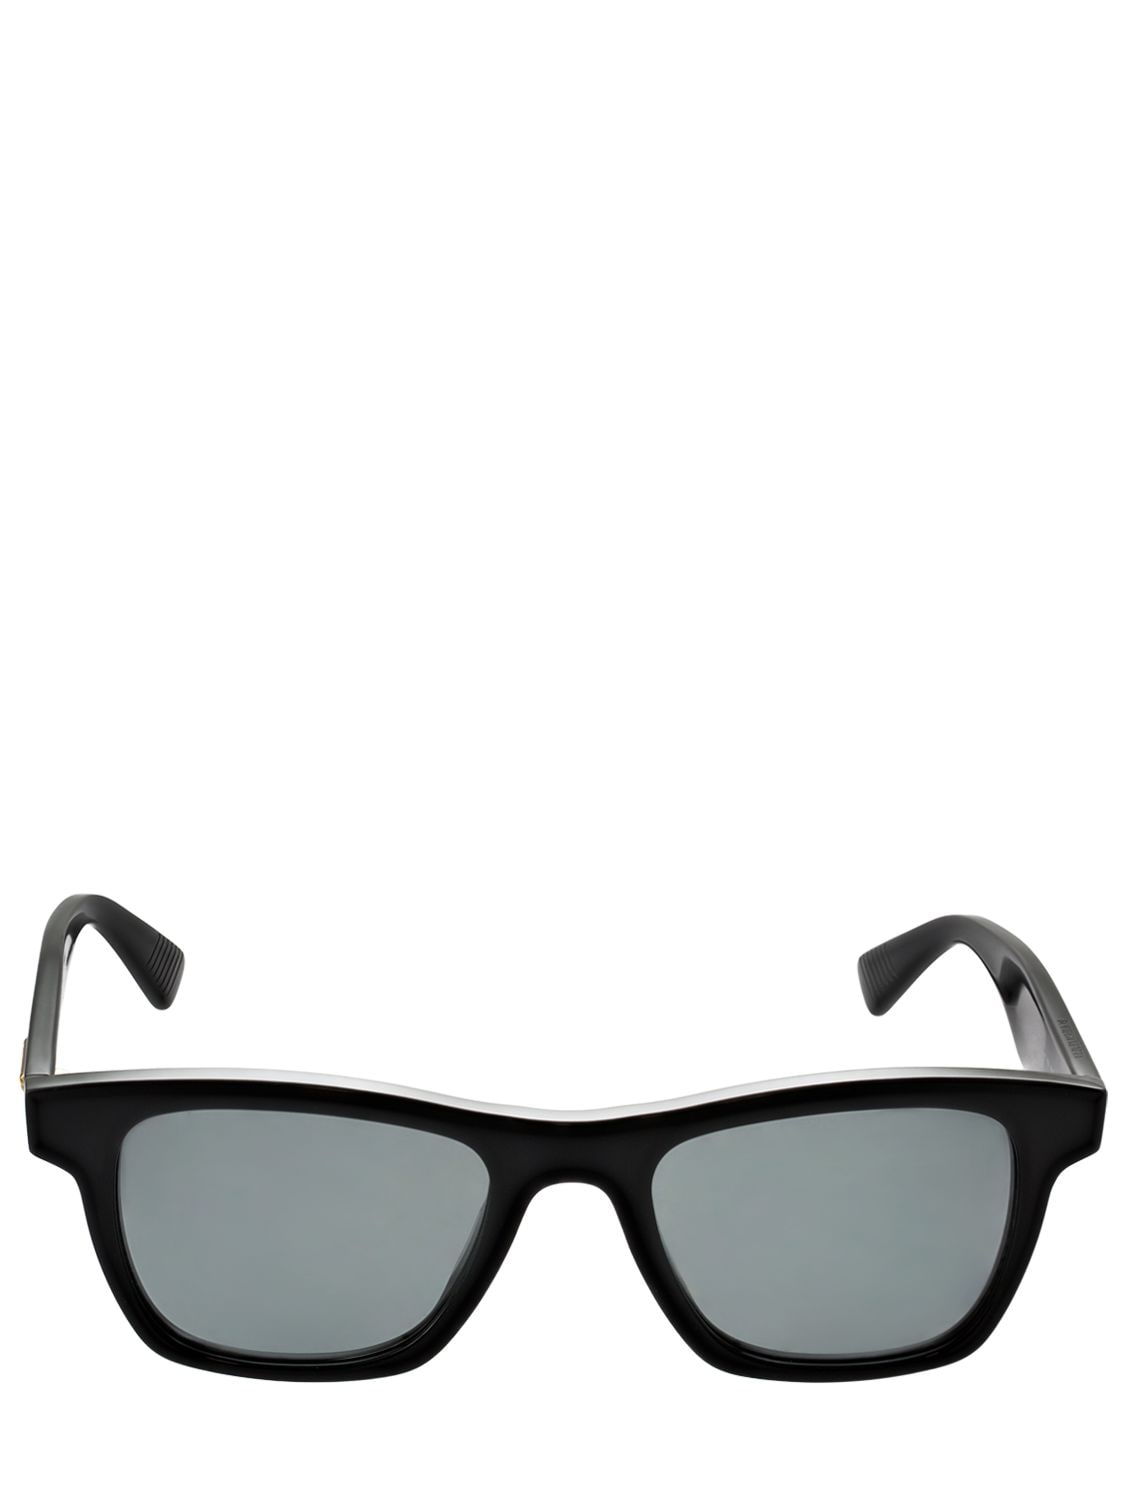 Image of Squared Acetate Sunglasses